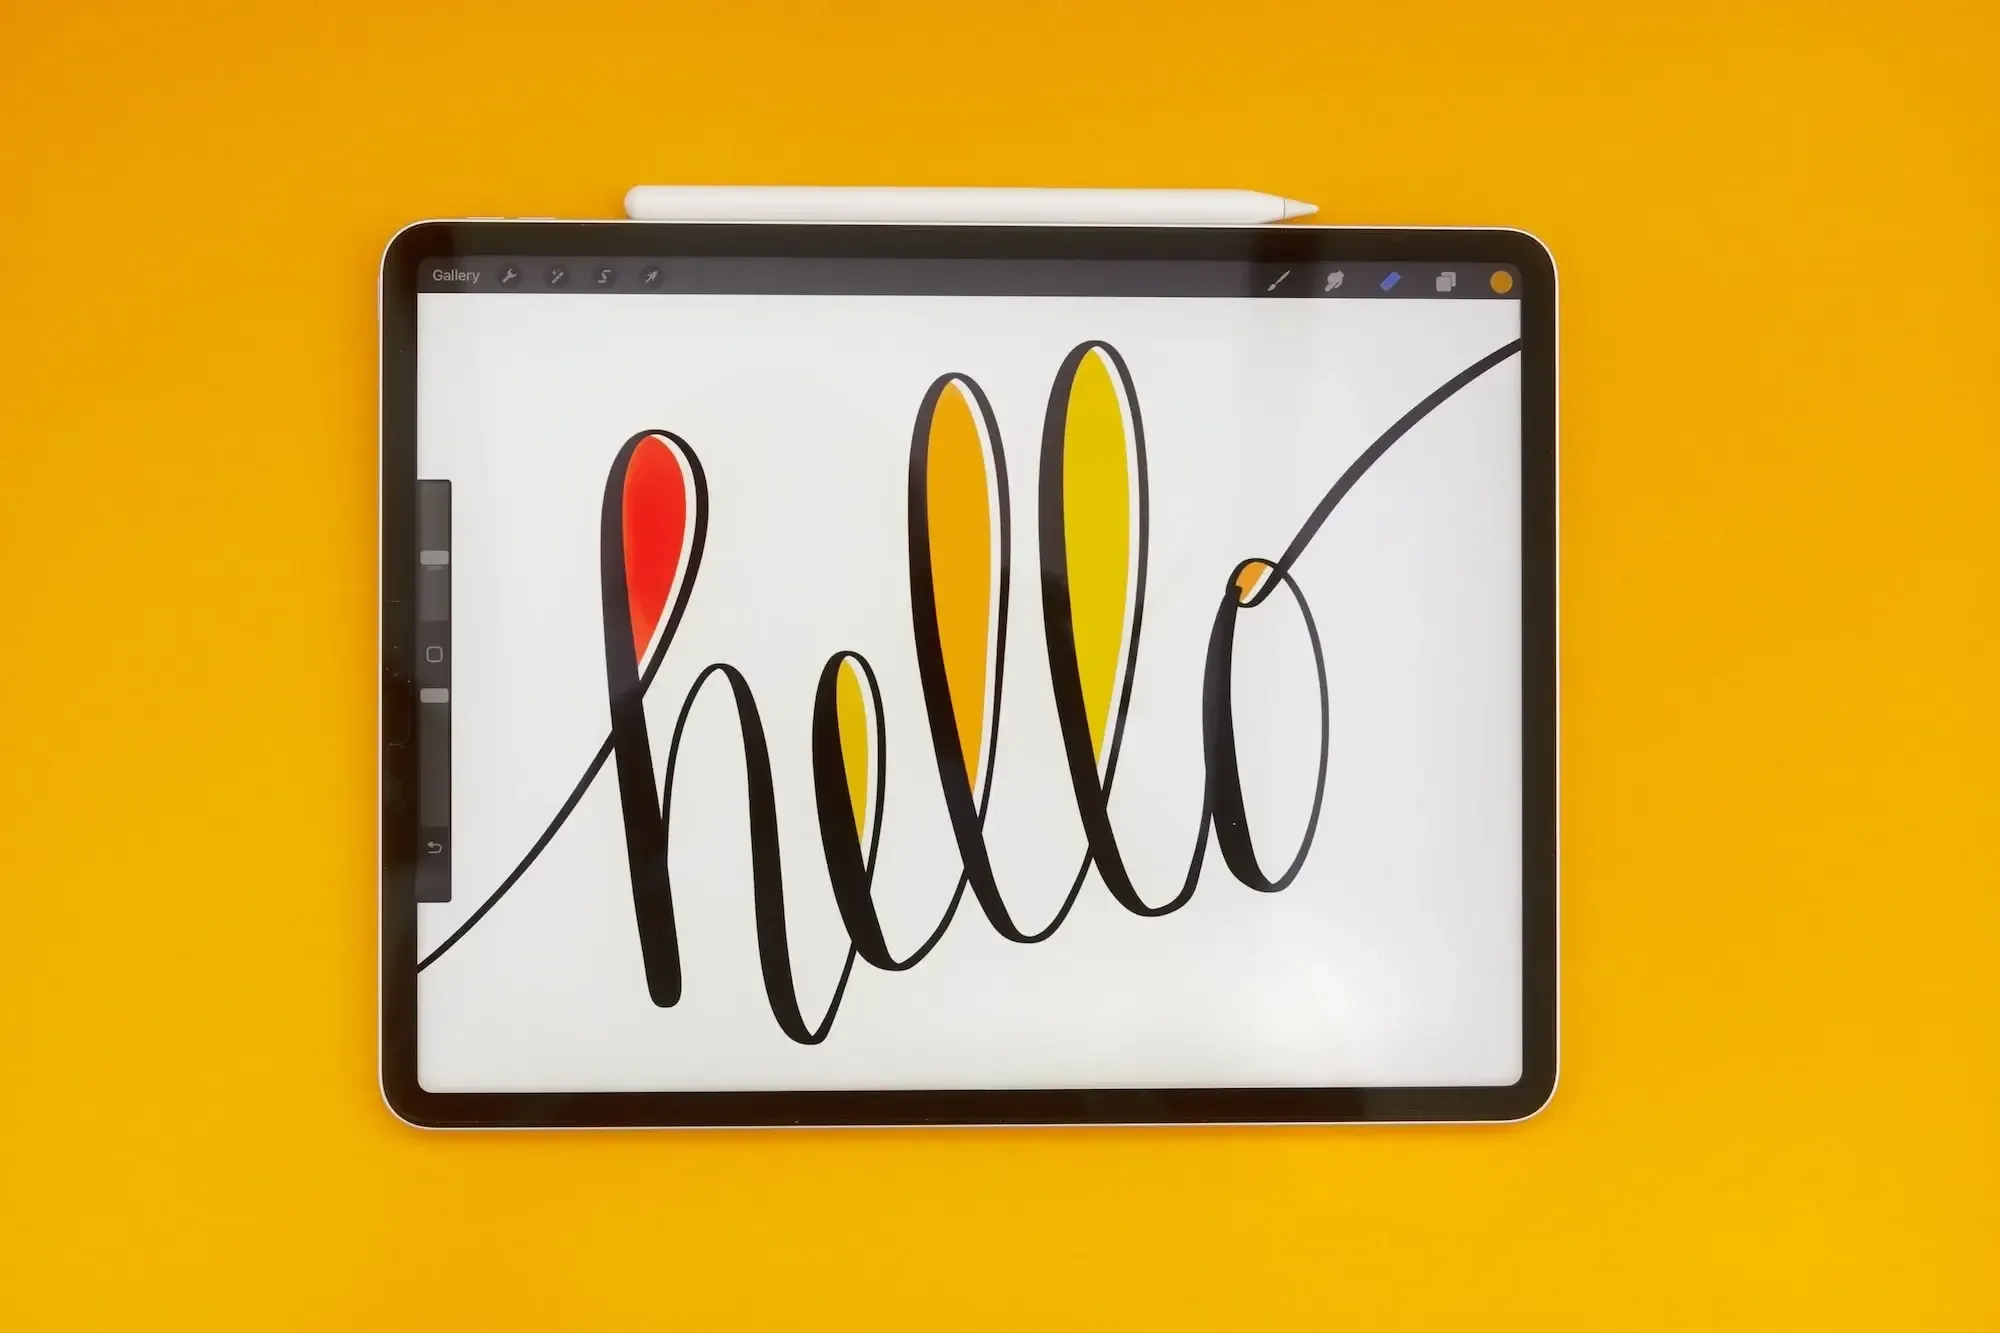 Orange Hintergrund, Tablet mit weißem Pen, darauf zu sehen "Hello" in geschwungener Schrift und bunten Akzenten